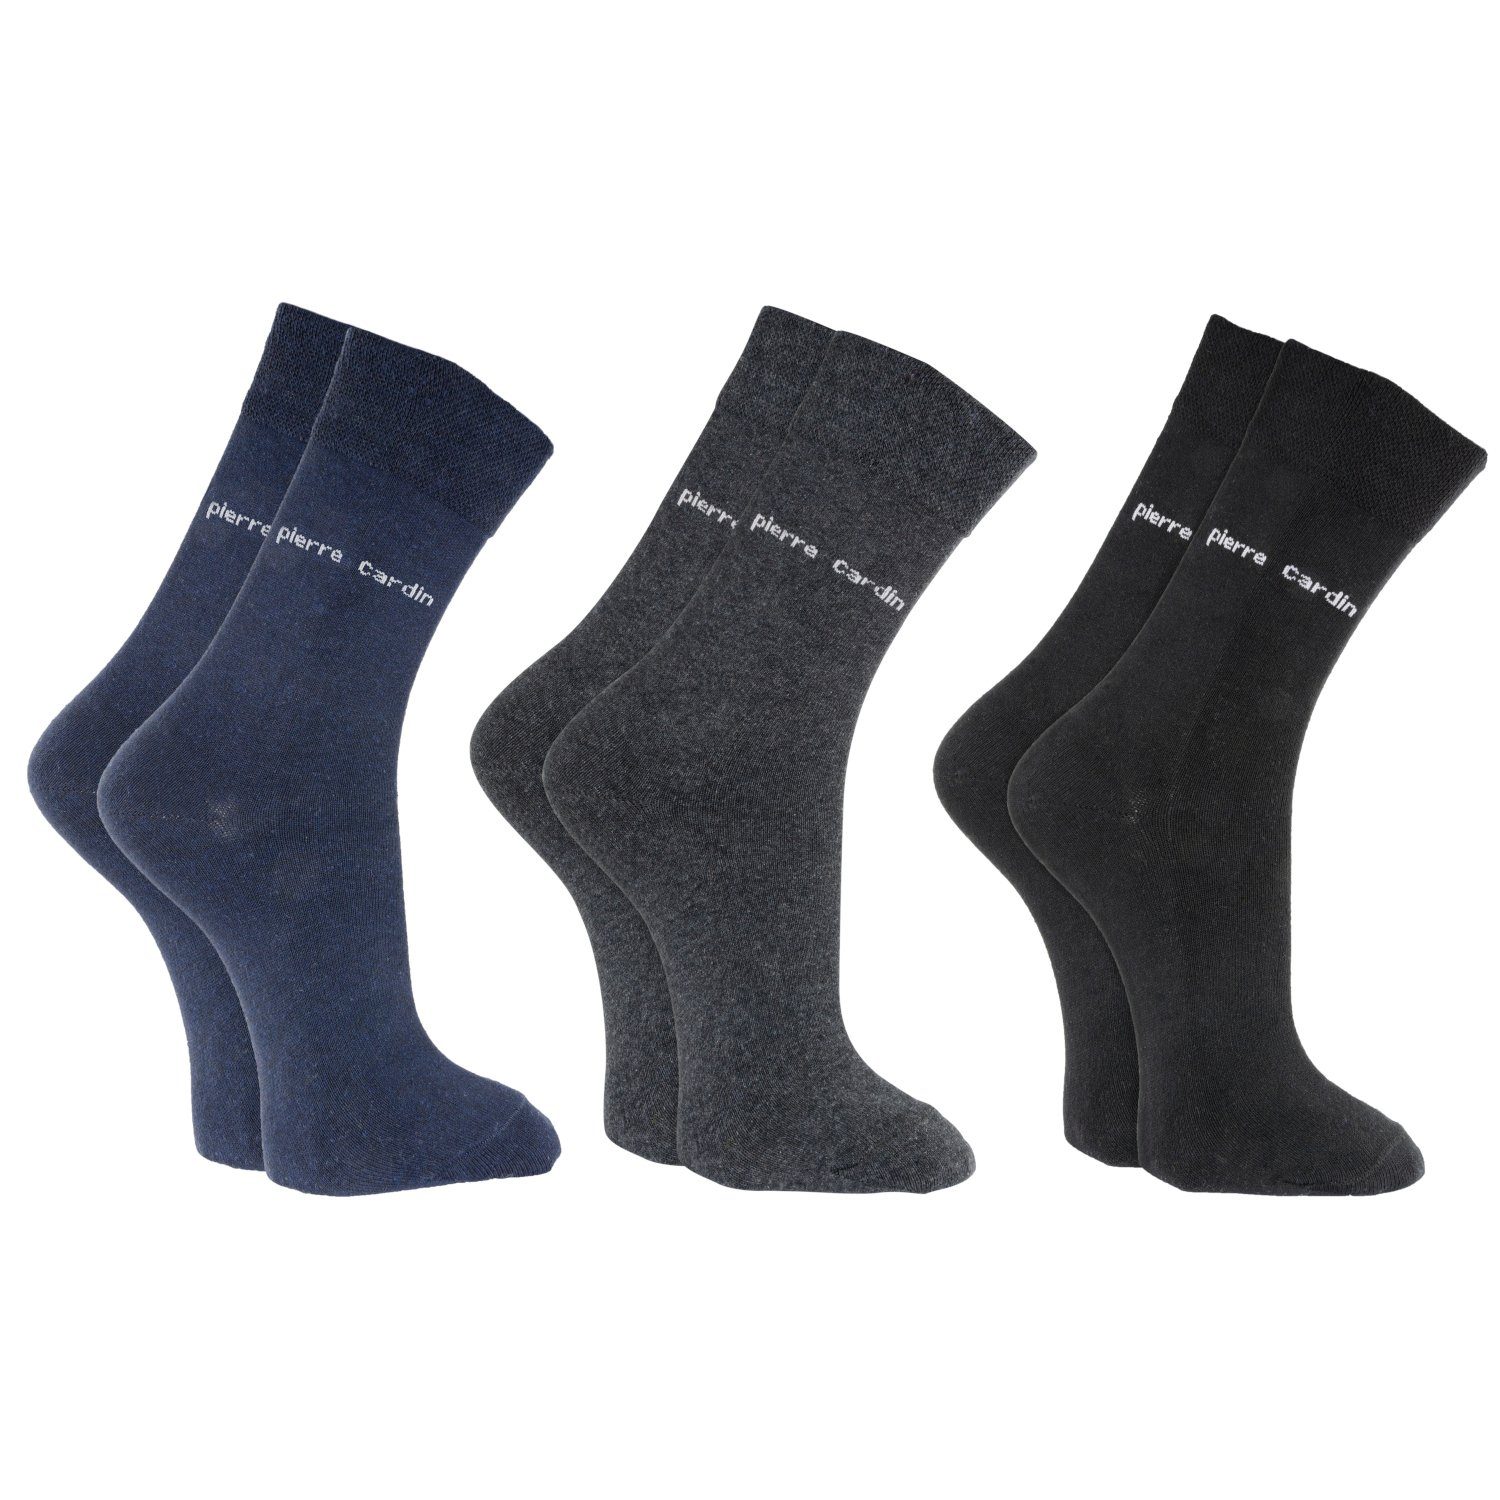 United Labels® Socken »Pierre Cardin Socken - Business Socken Herren Männer  Schwarz/Grau/Navy (3er Pack)« online kaufen | OTTO